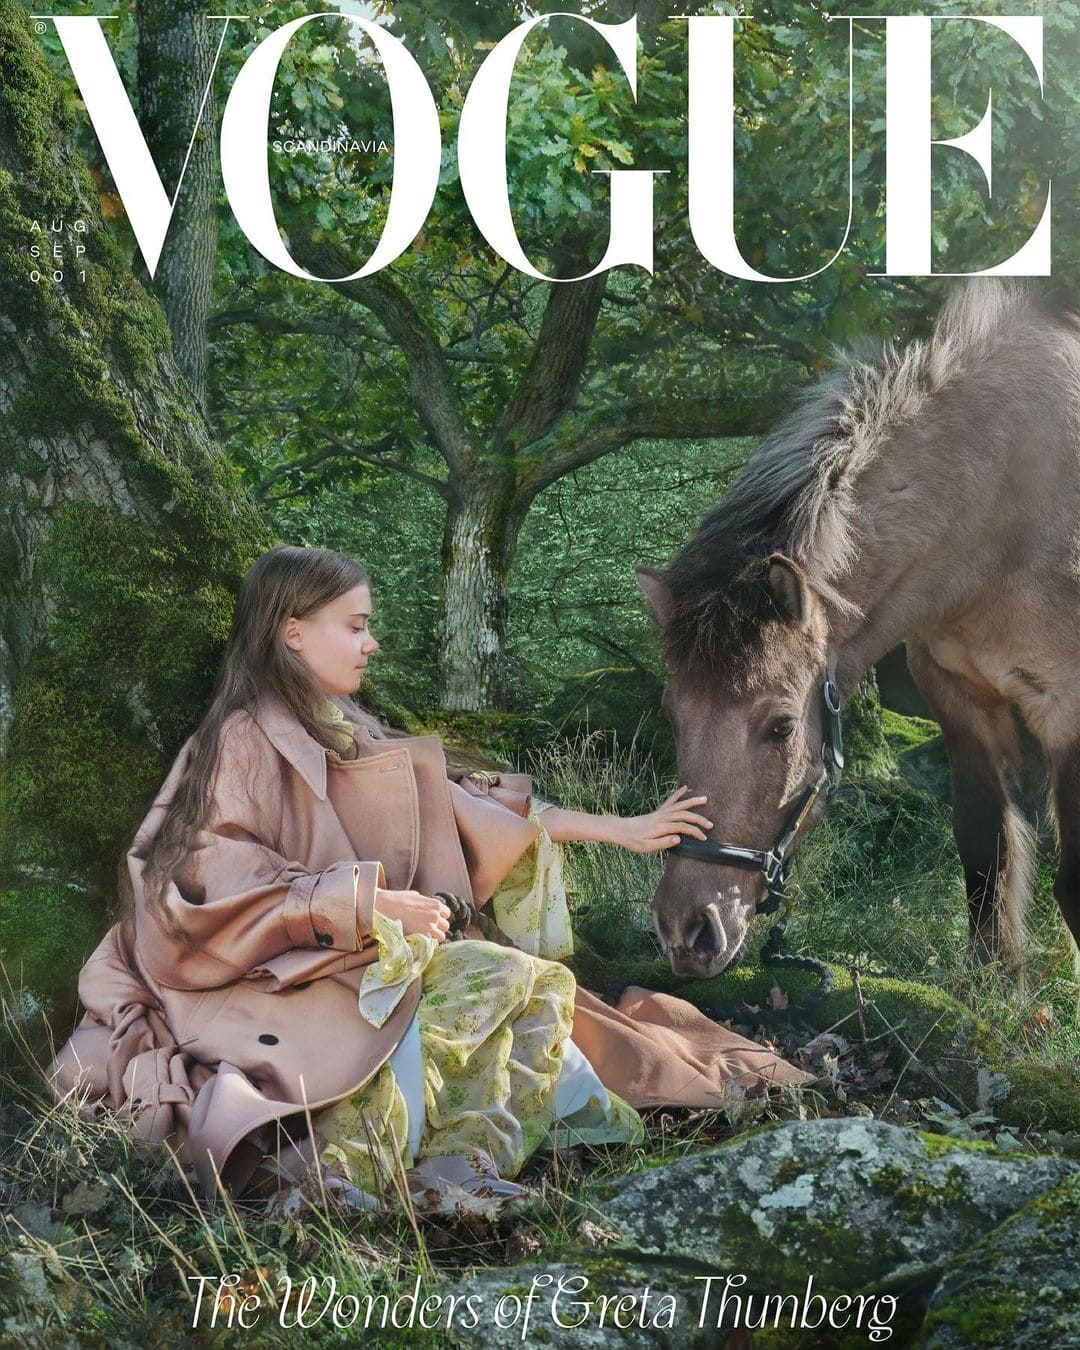 Грета Тунберг попала на обложку Vogue и обвинила индустрию моды фото 1